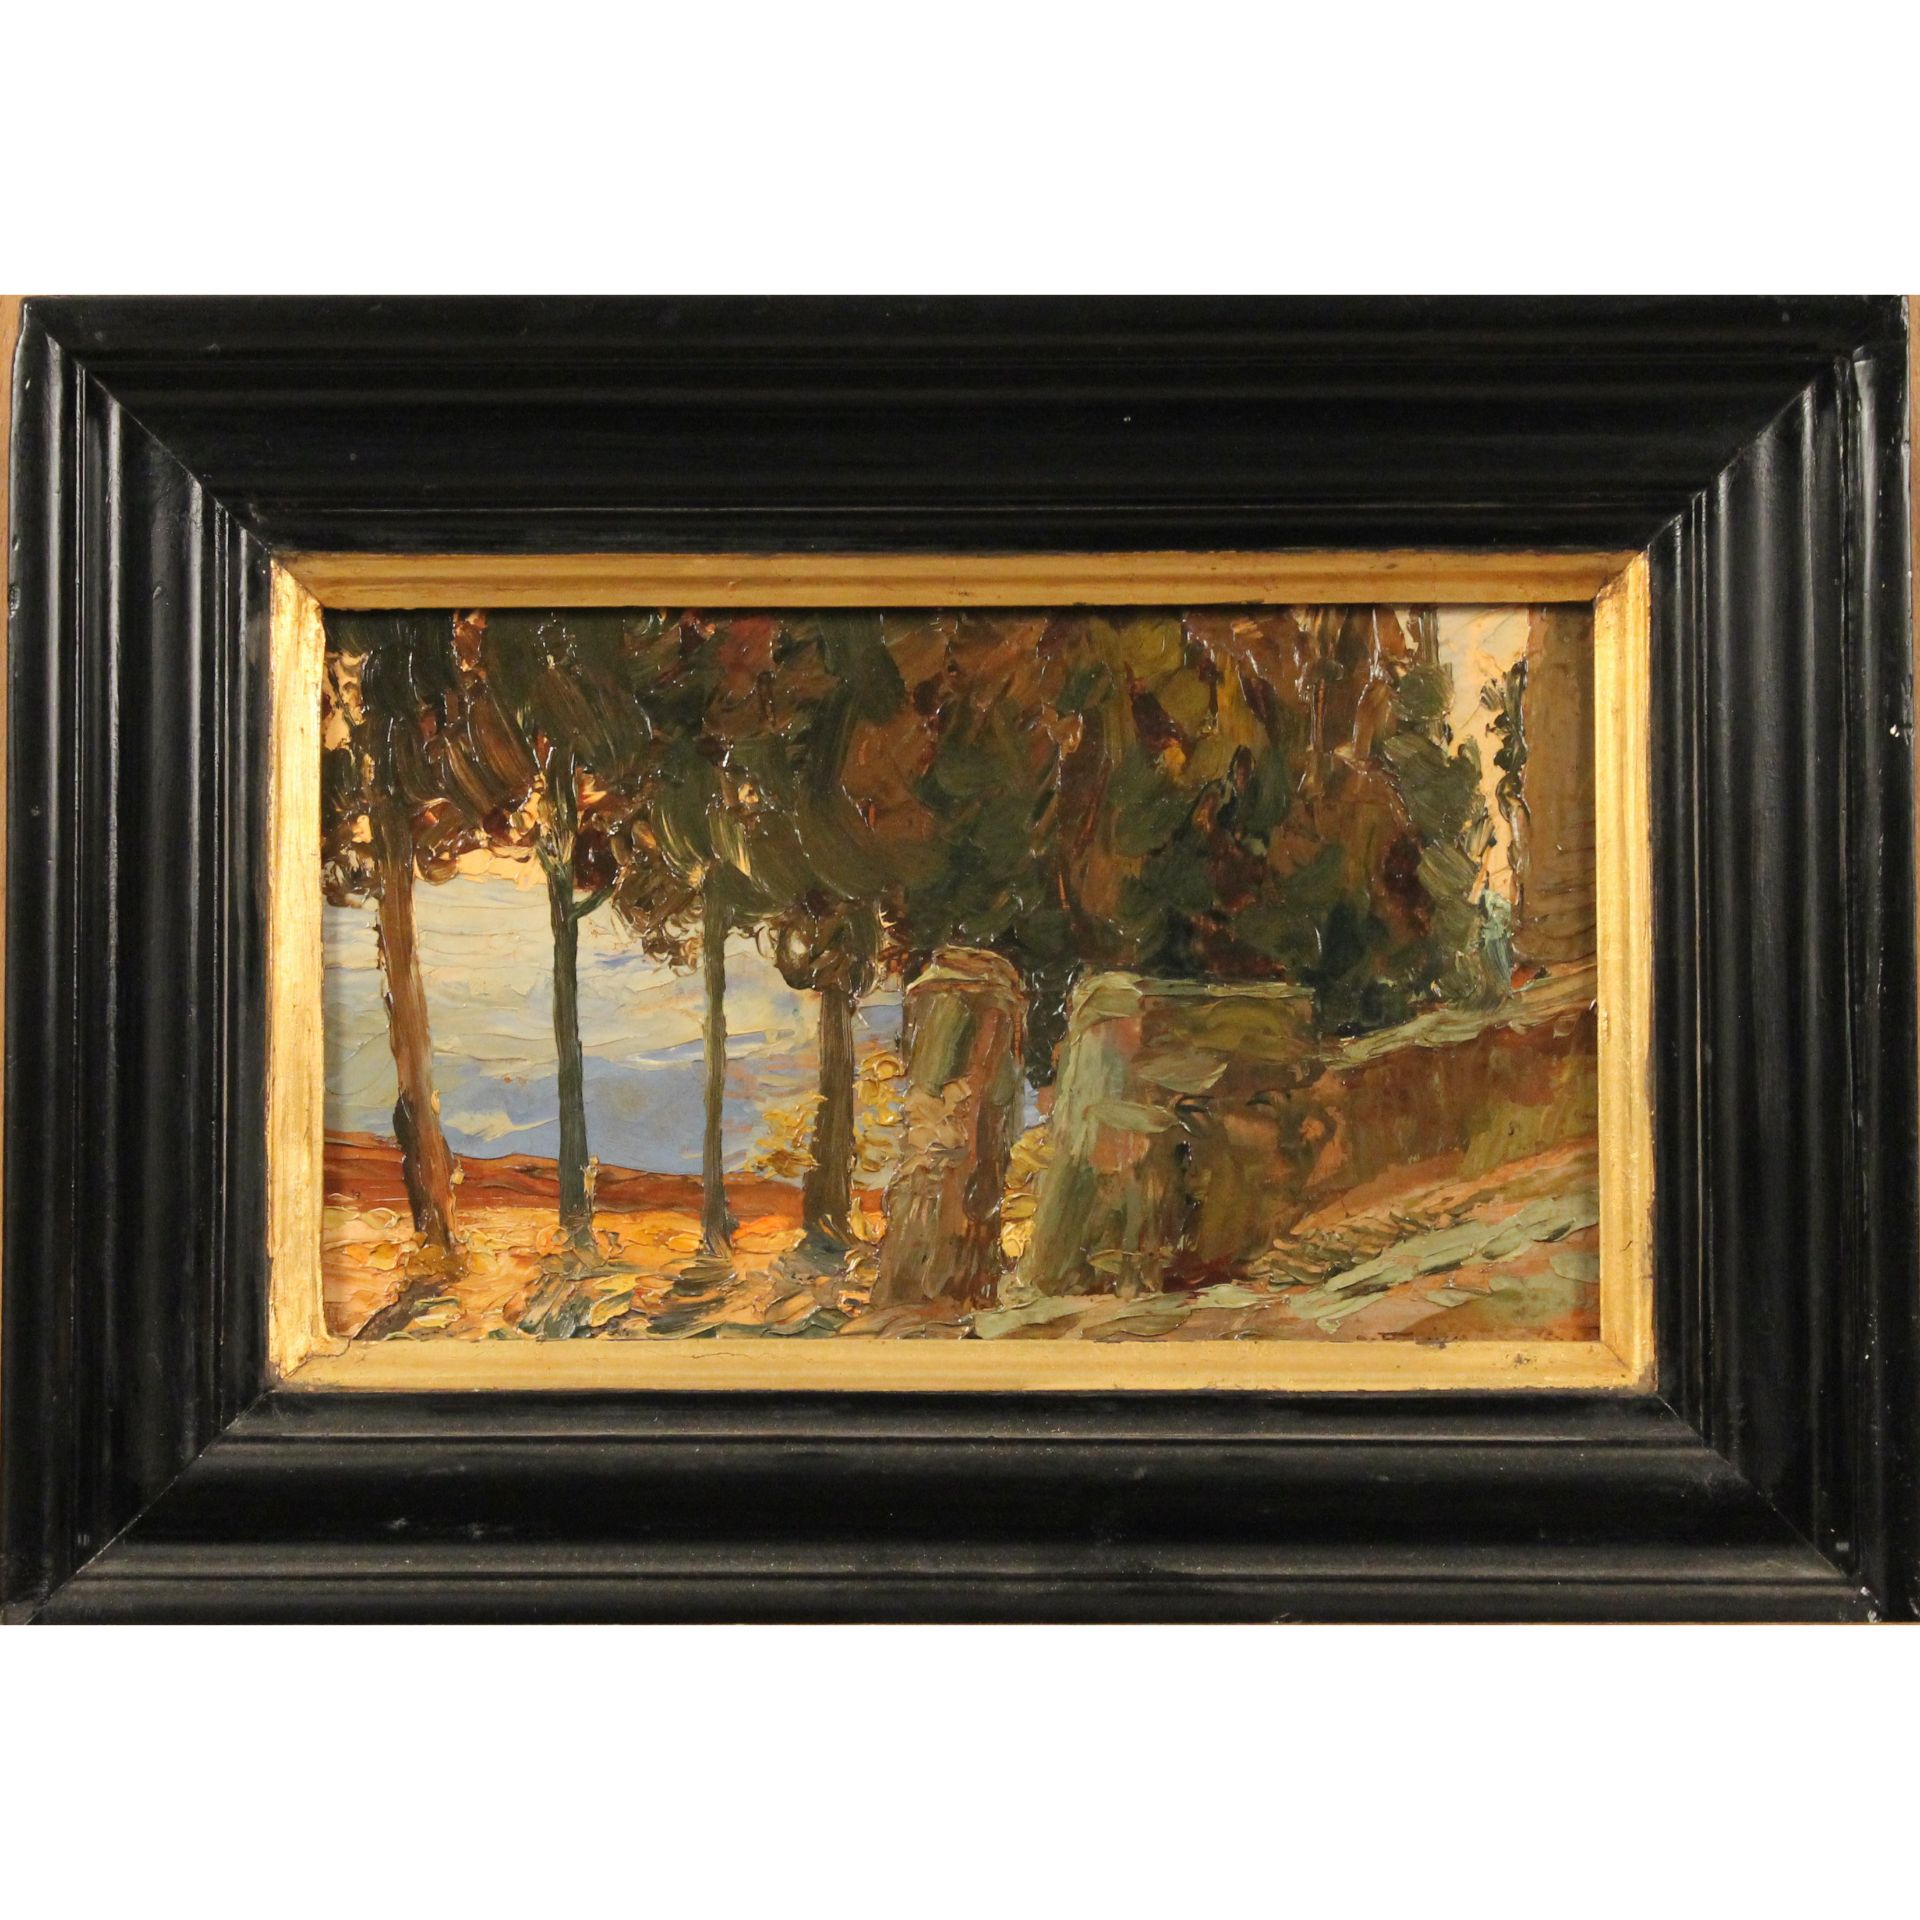 Pietro De Francisco (1873/1969) "Paesaggio alberato" - "Tree-lined landscape"